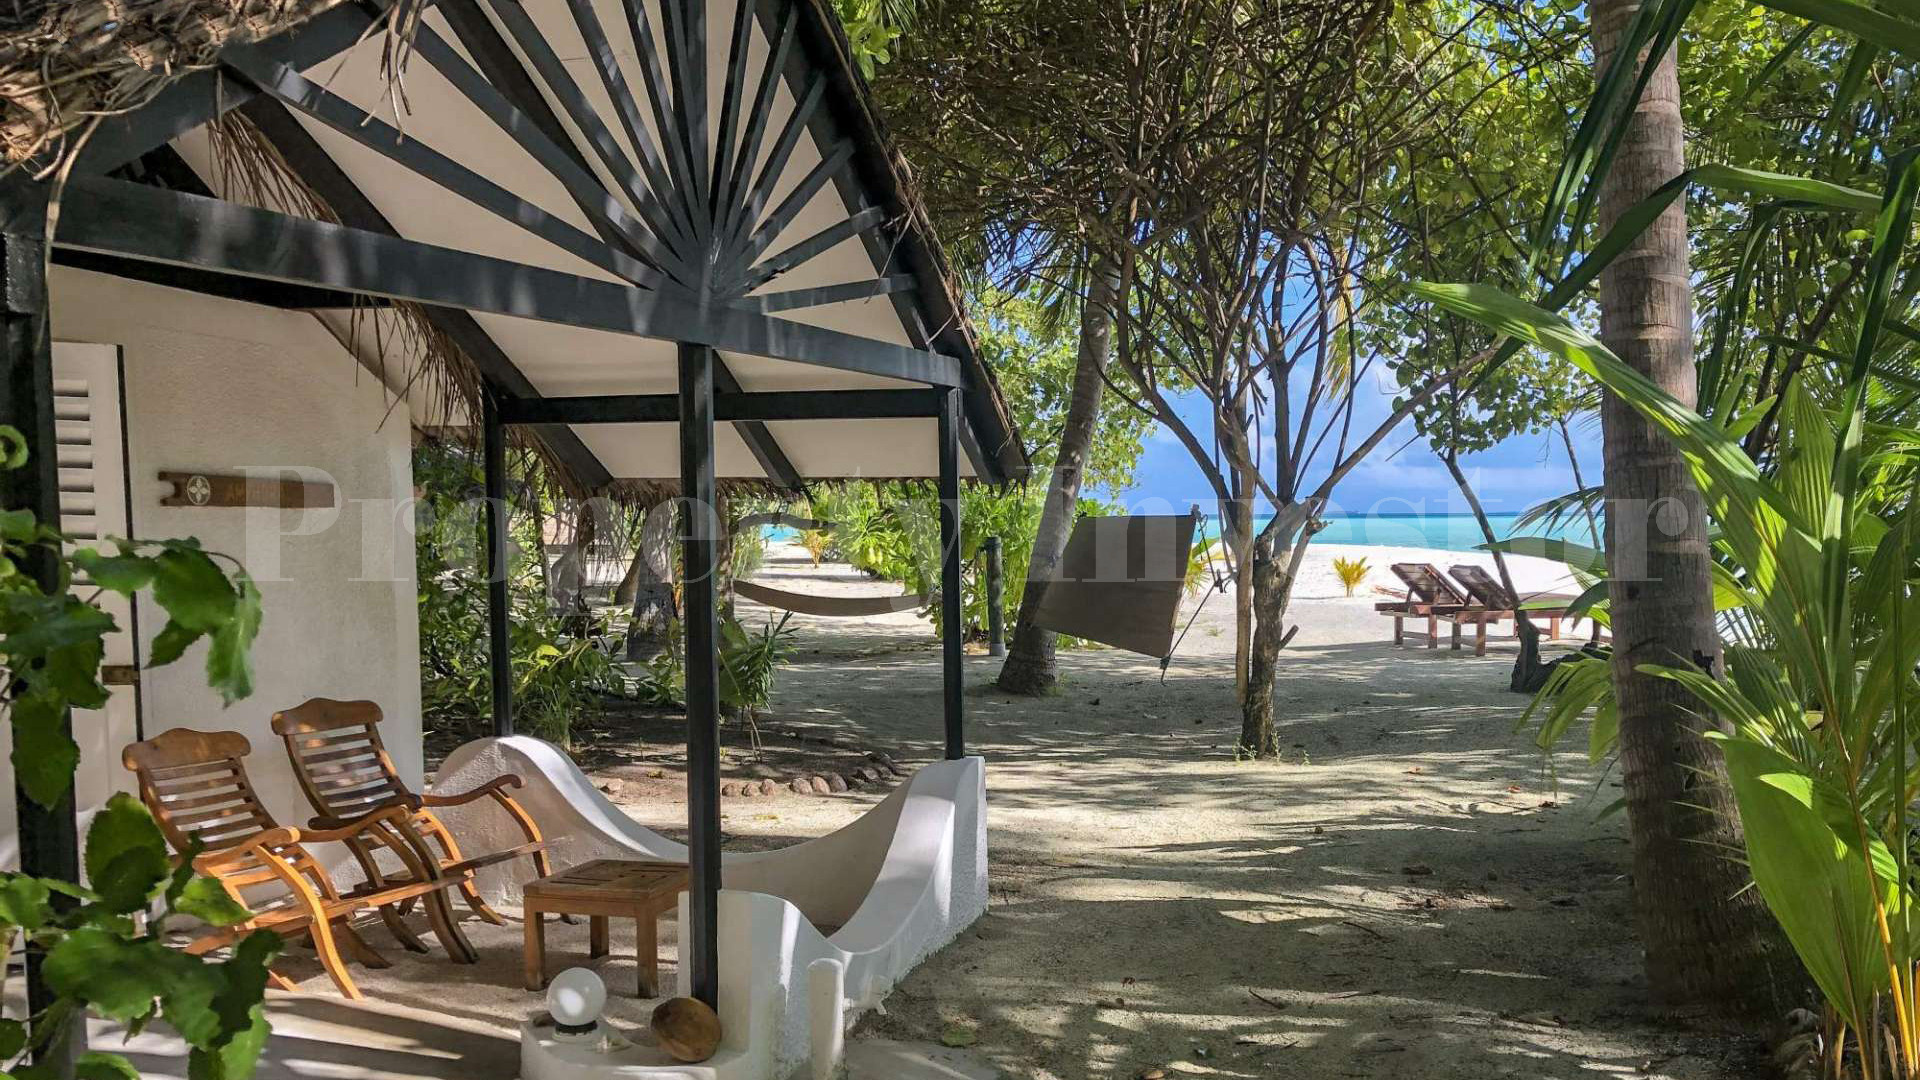 Функционирующий 4* звёздочный эко отель на острове с готовым планом расширения ещё на 174 номера на Мальдивах